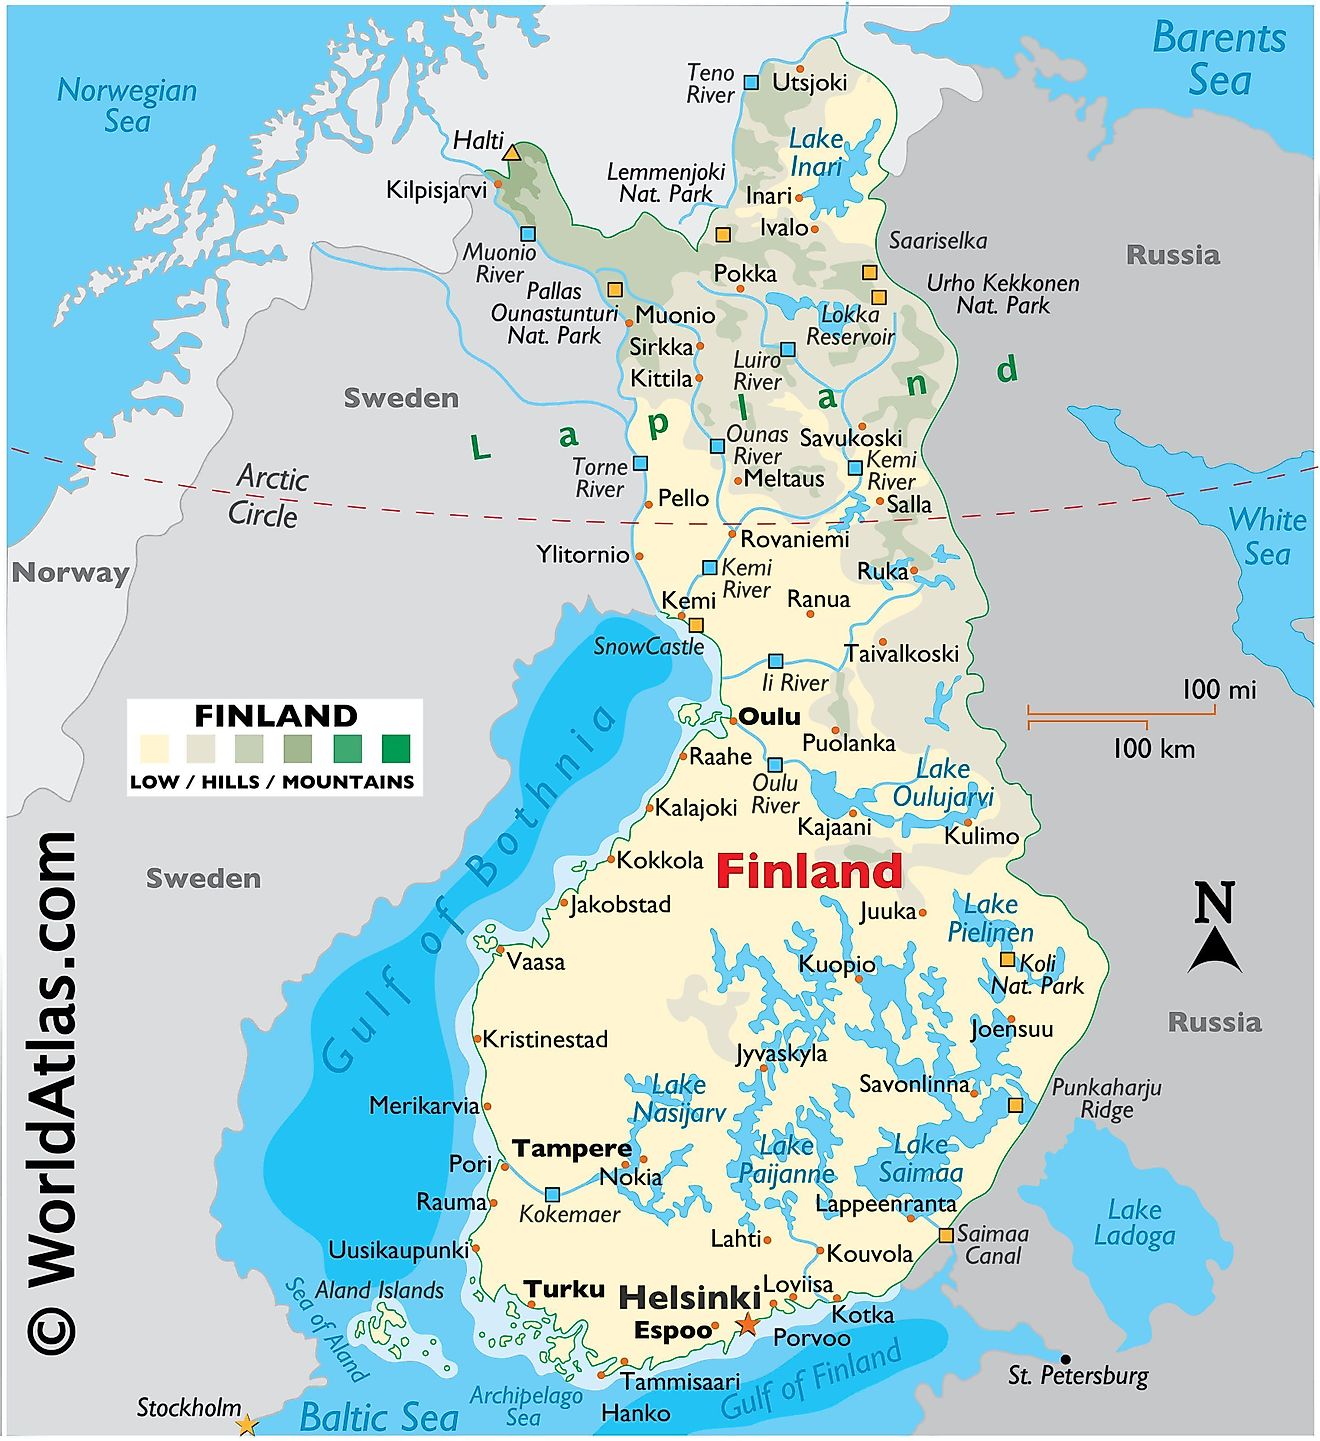 Mapa físico de Finlandia que muestra el terreno, los principales lagos y ríos, puntos extremos, islas, ciudades importantes, fronteras internacionales, etc.